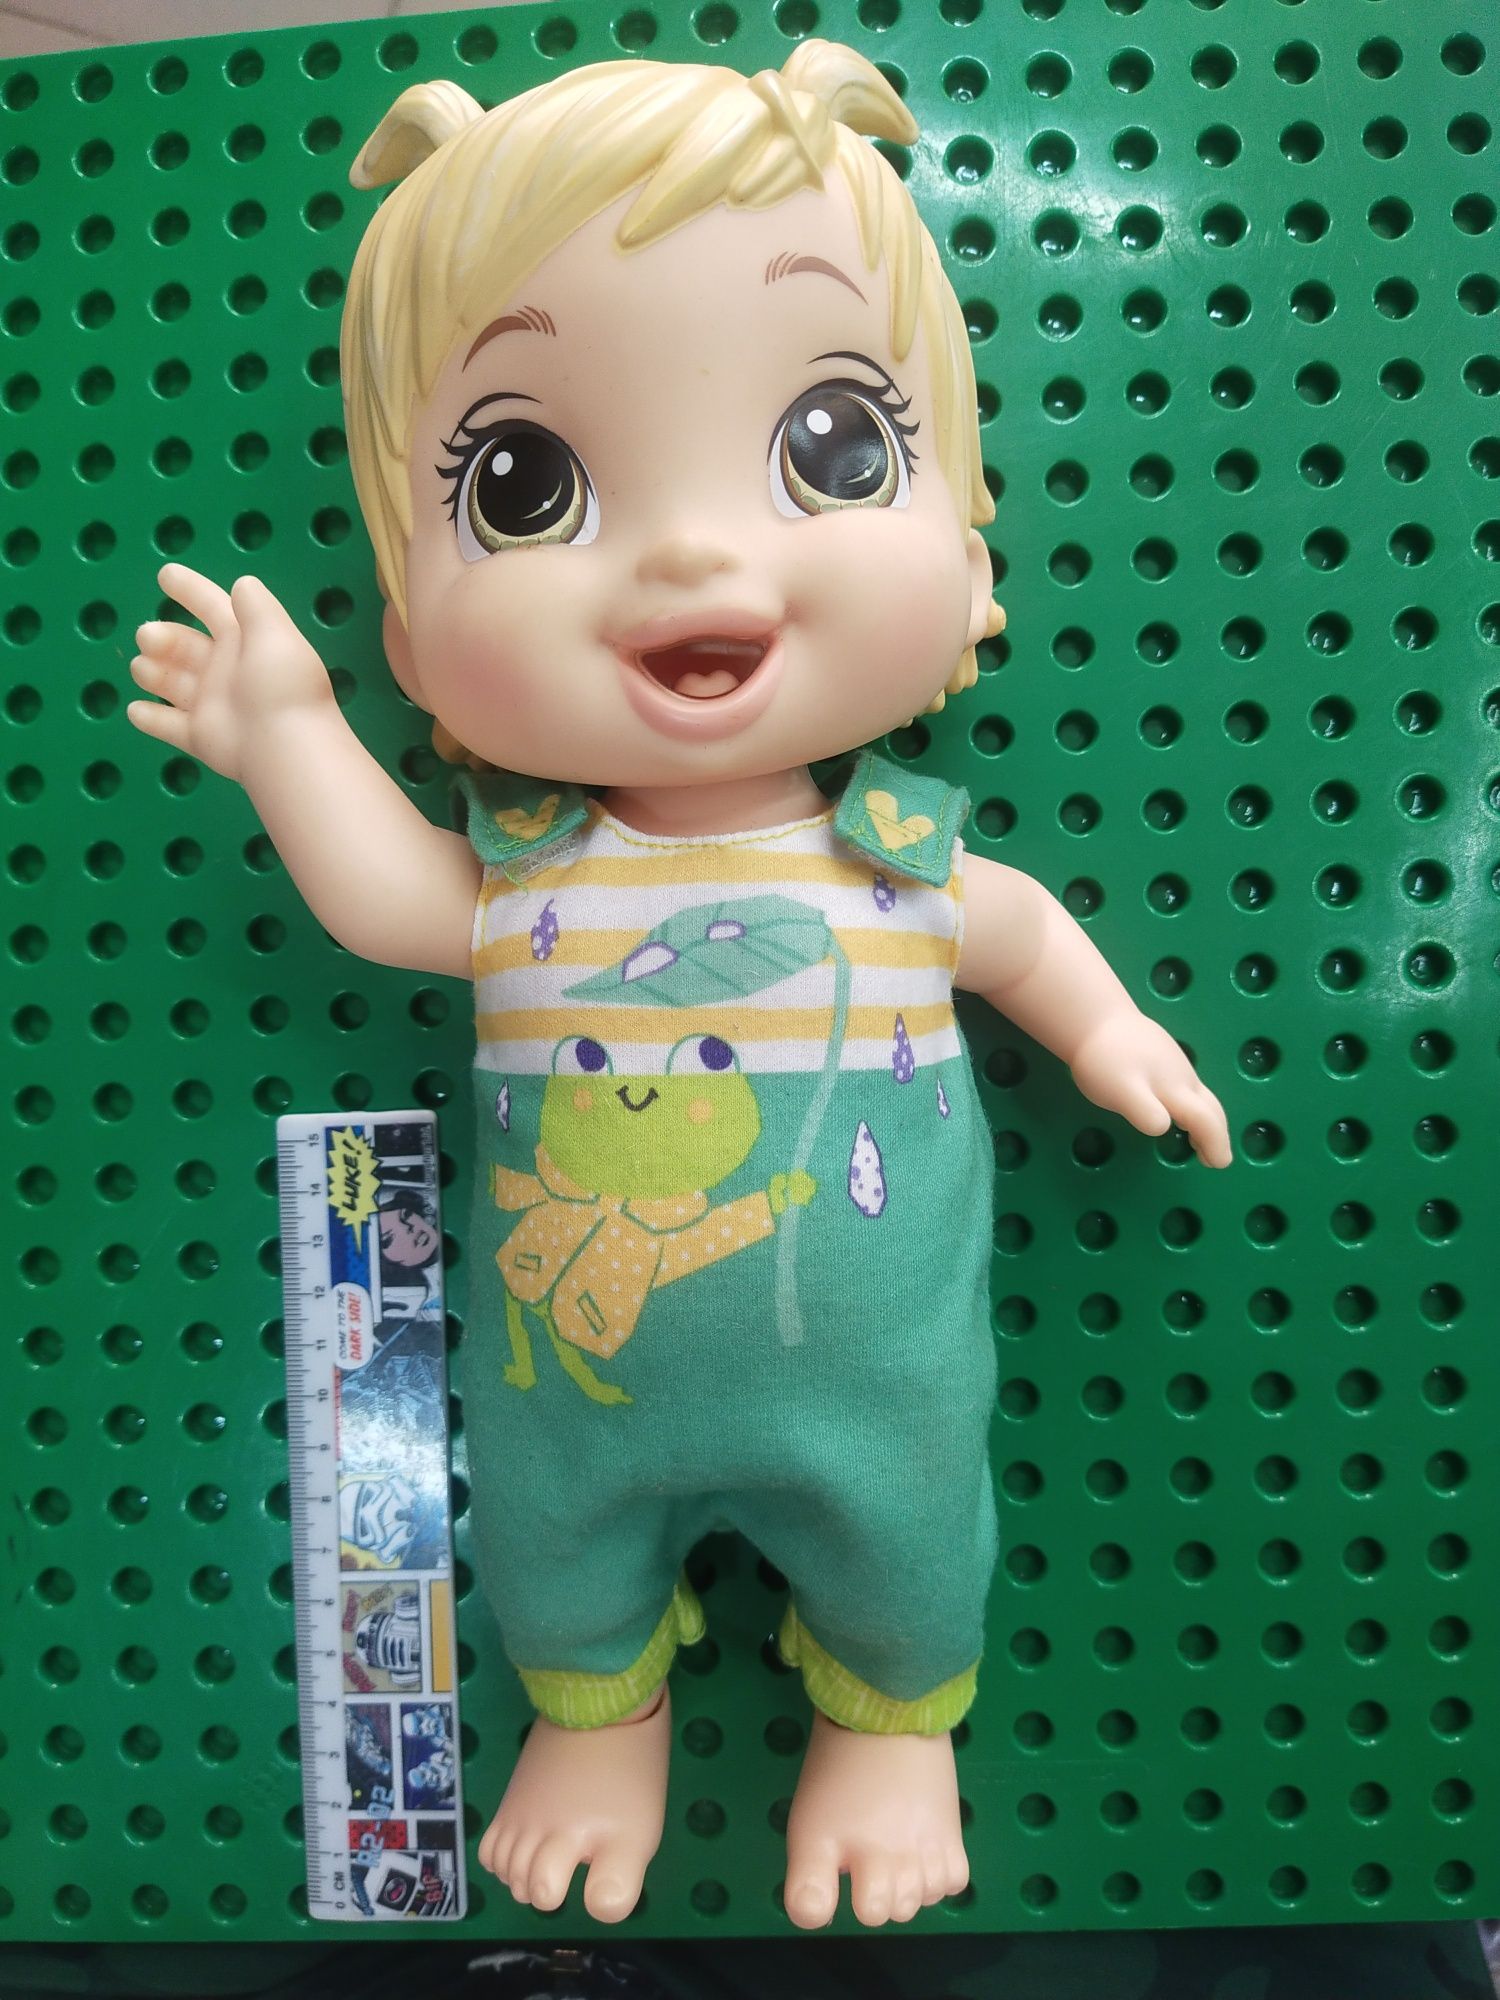 Ляльки куклы пупсы Ариэль Baby Alive принцесса София Доктор Плюшево